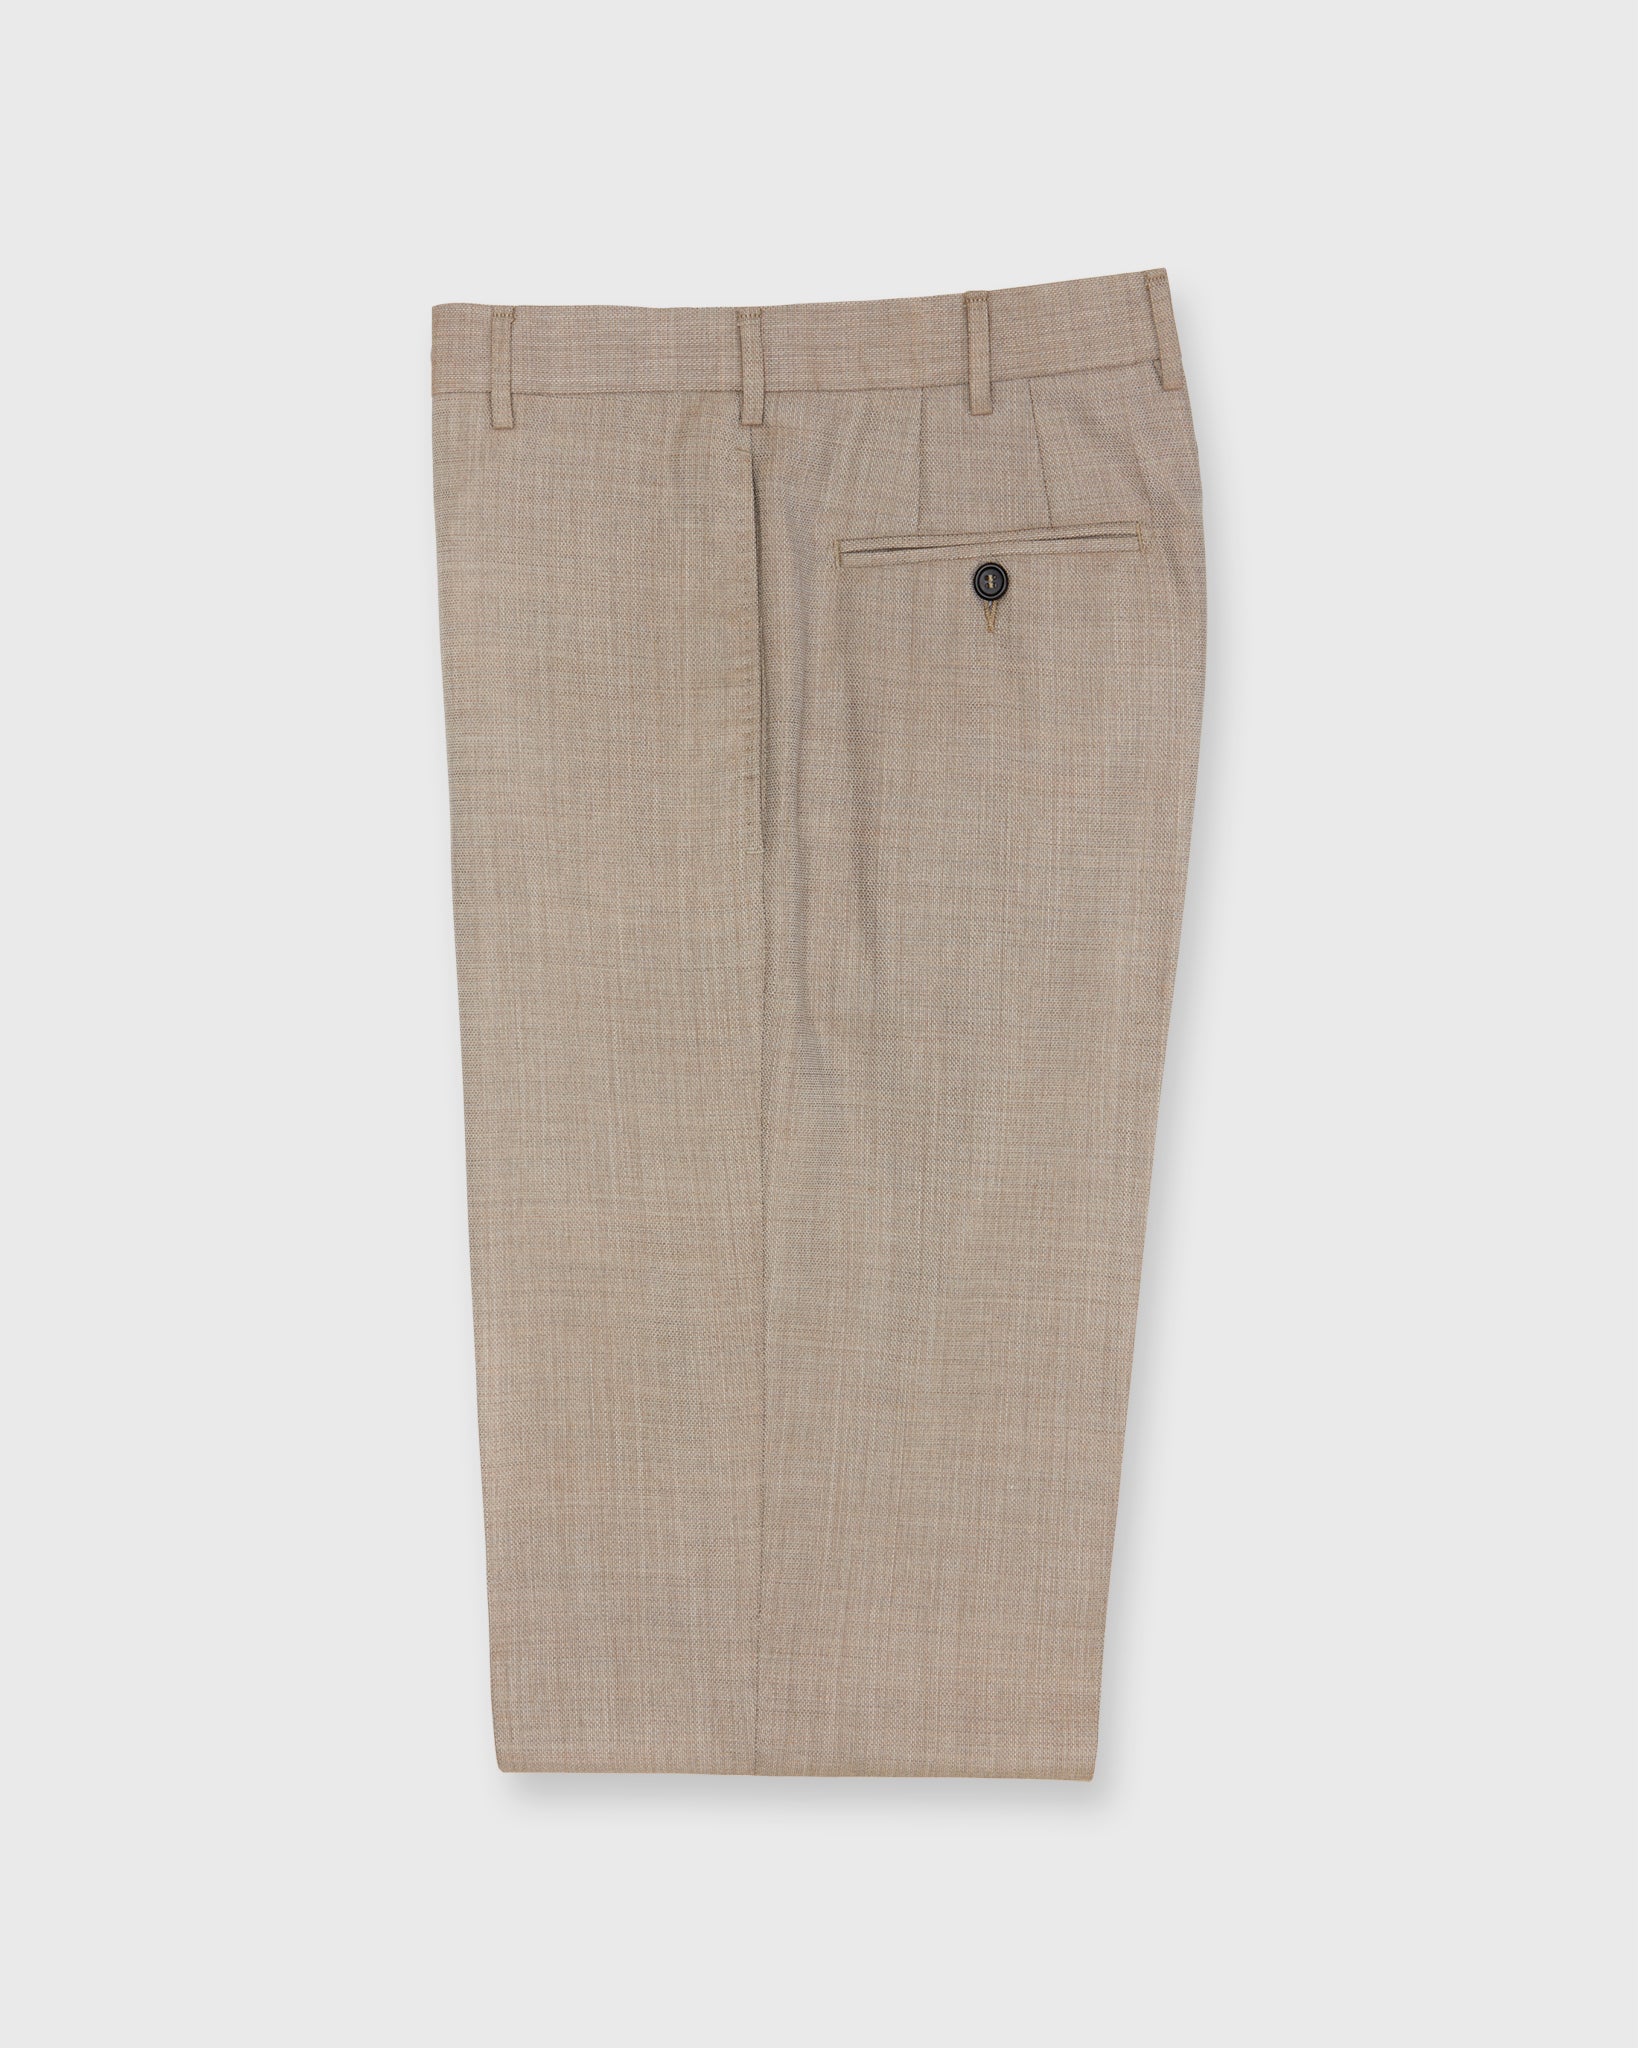 Dress Trouser in Wheat Wool Hopsack